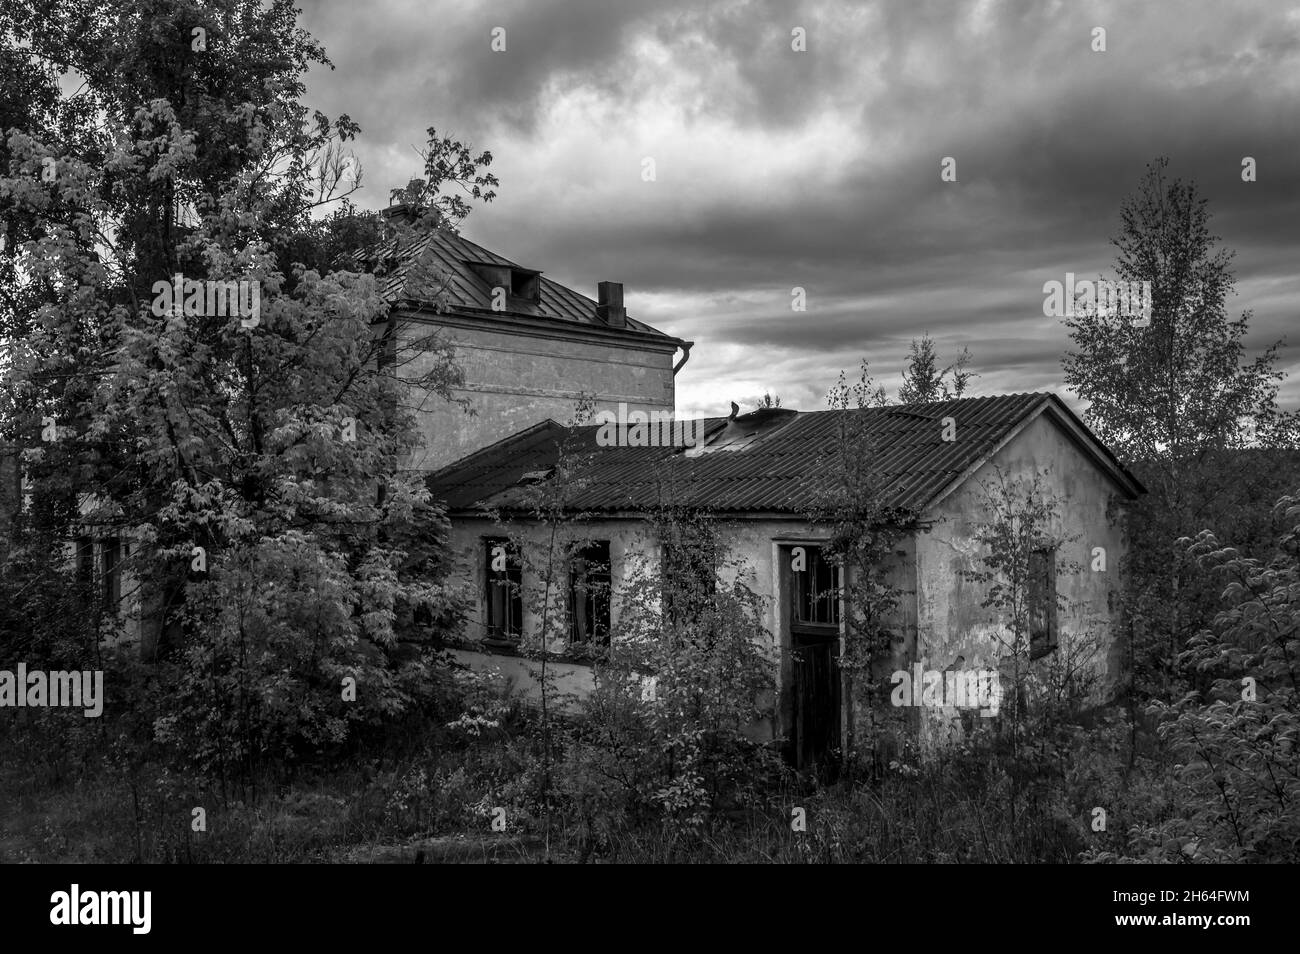 Verlassene baufällige Häuser in der ländlichen Gegend von Sortavala. Karelien, Russland. Schwarz und Weiß. Stockfoto